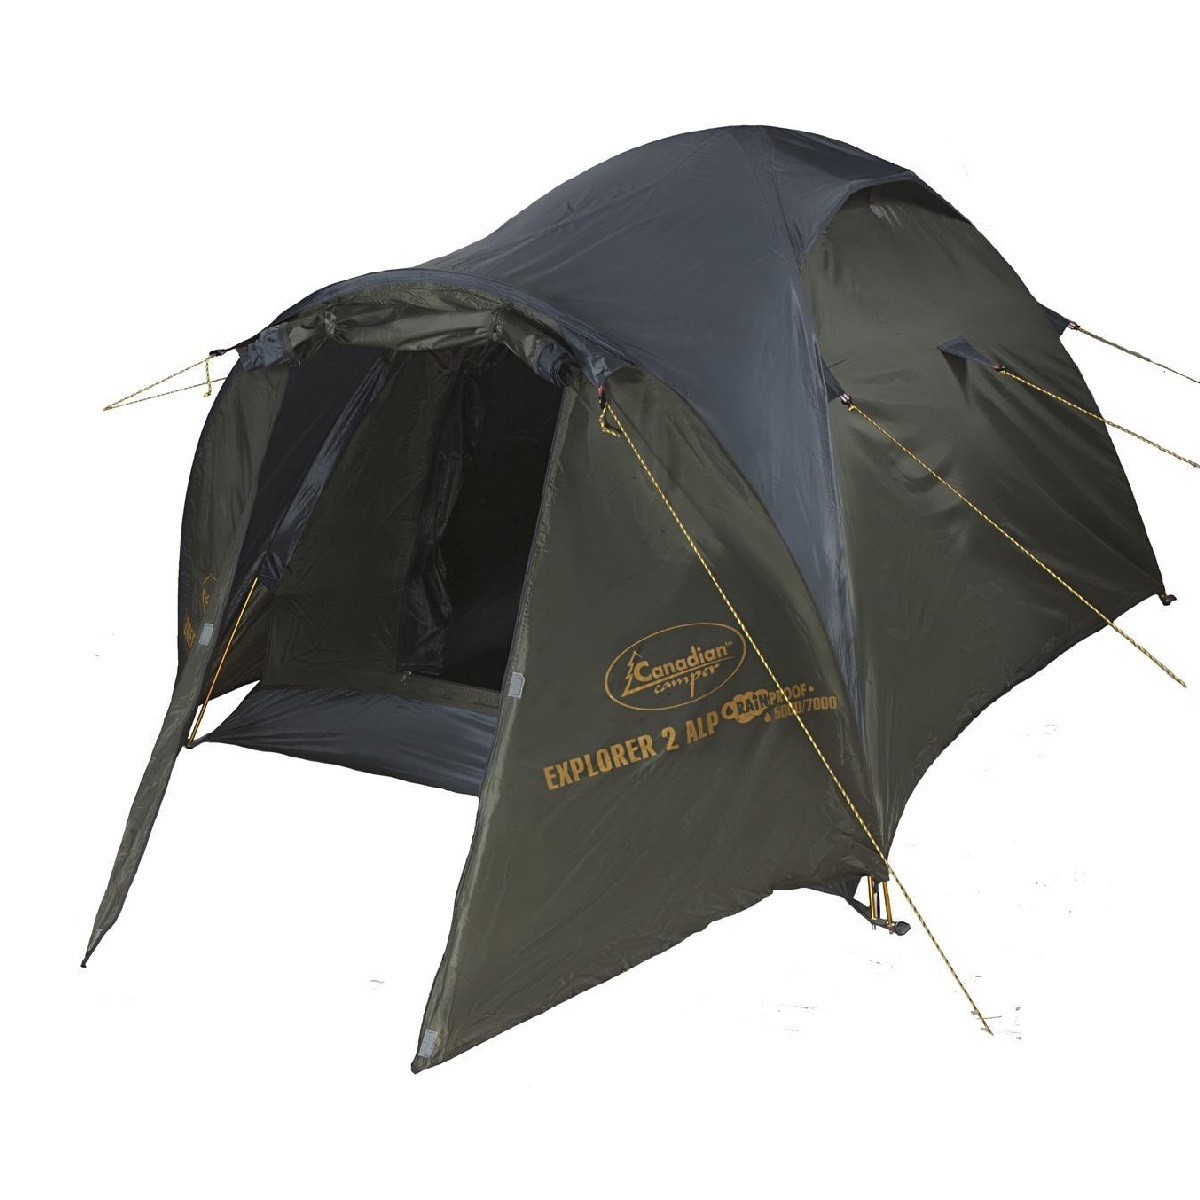 Палатка Nordway Camper 4. Палатка Canadian Camper Explorer 2 al. Red Fox Explorer палатка. Палатка verticale Cascade 3. Explore camp